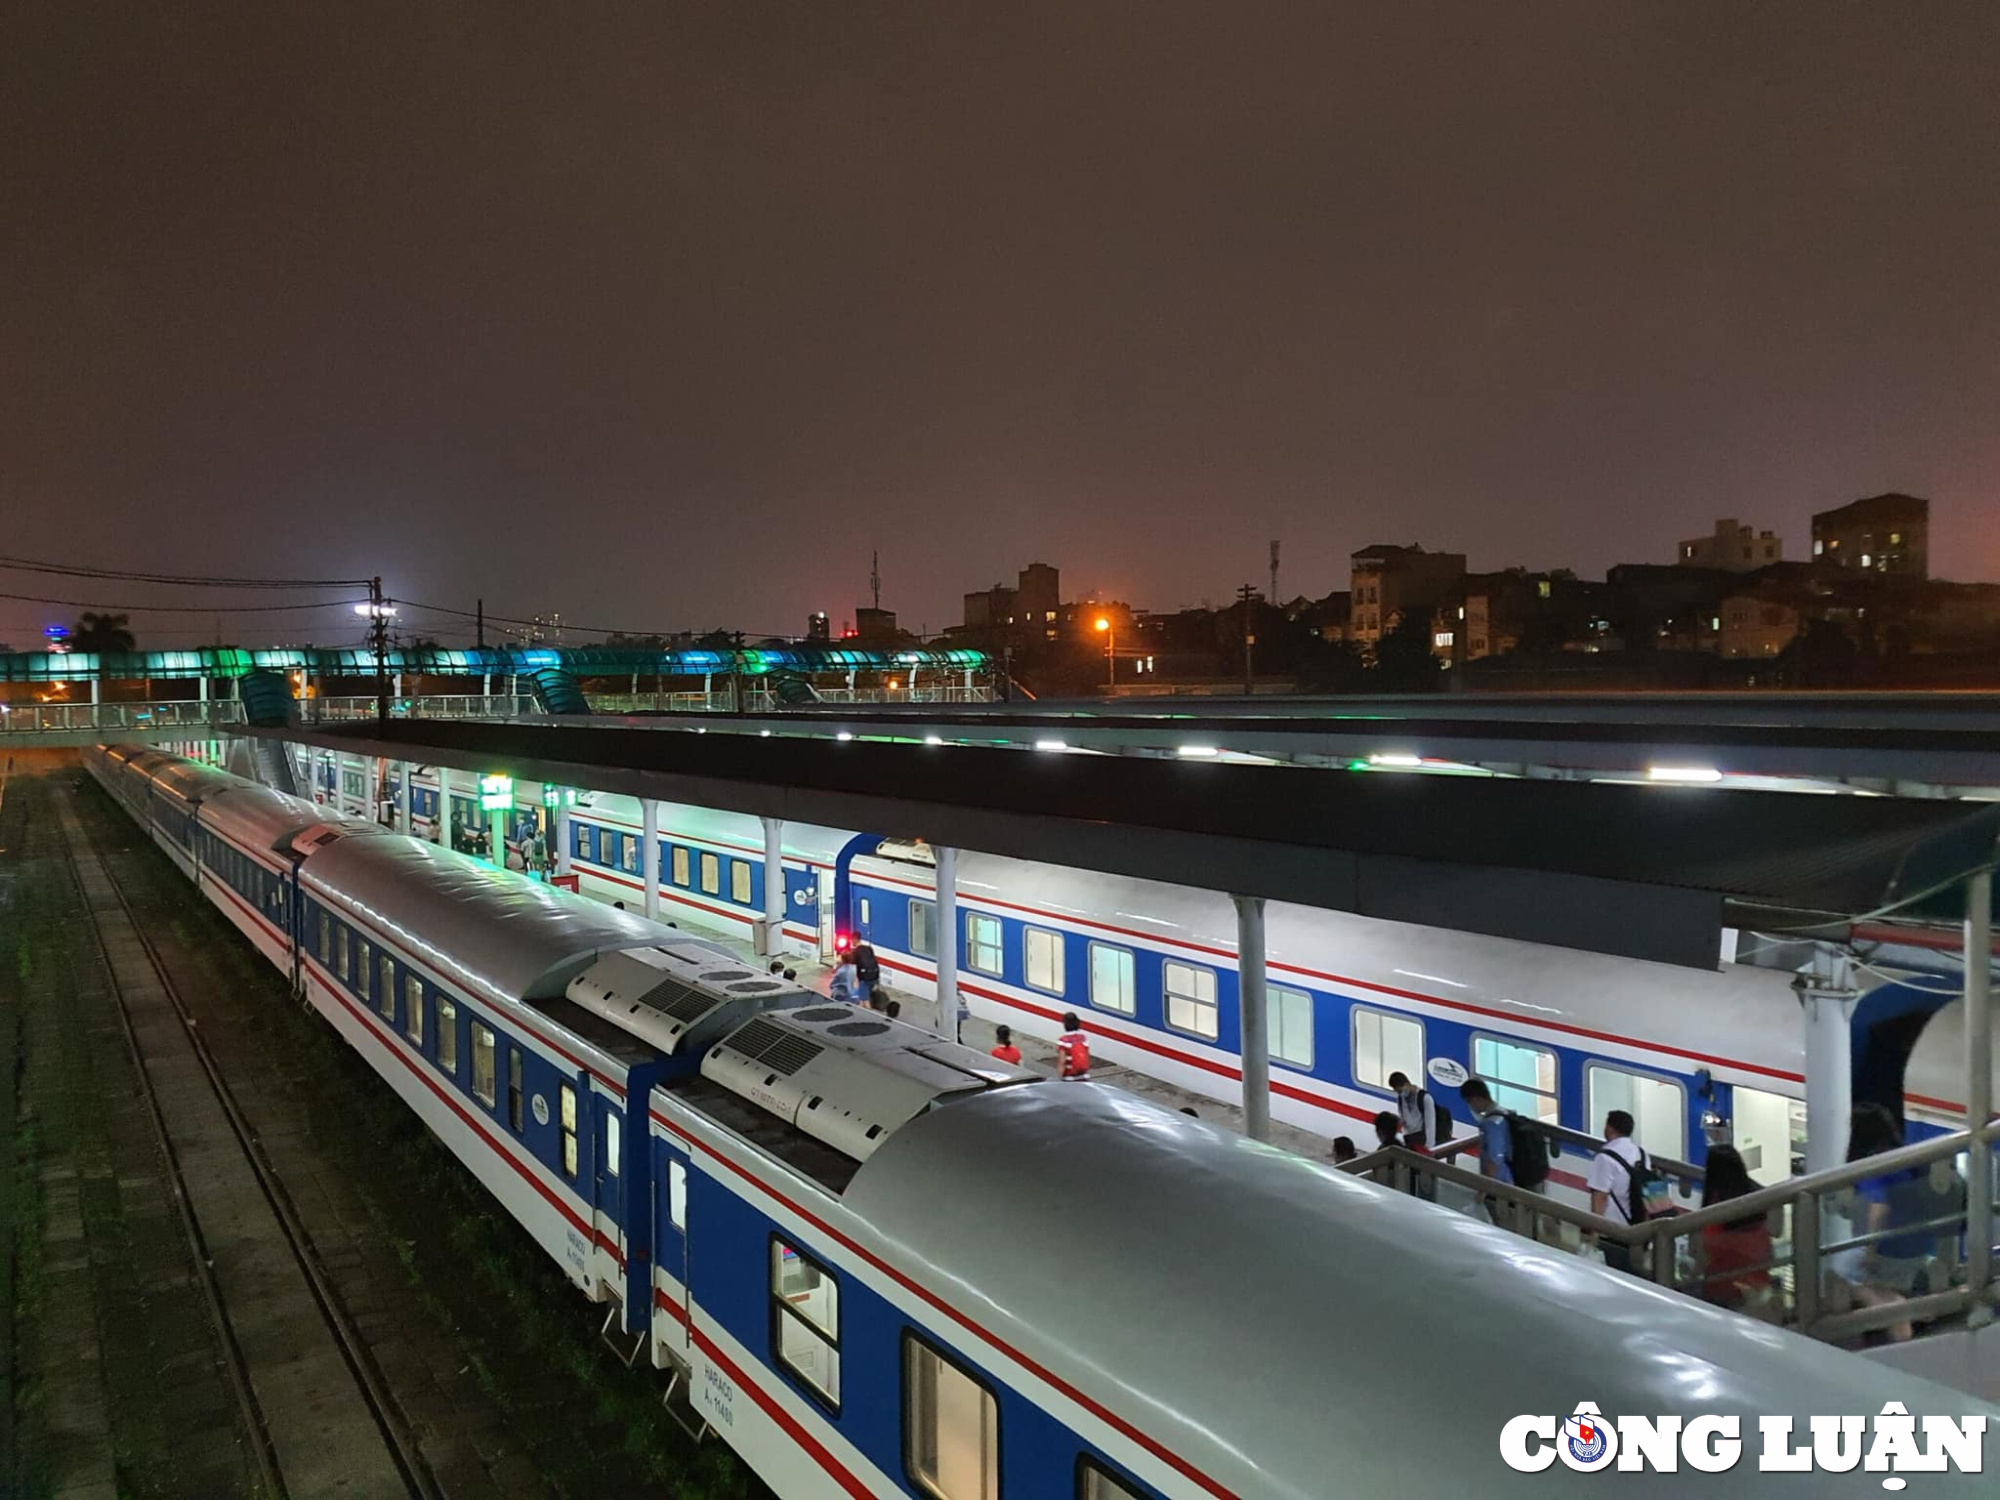 Hoàn chỉnh quy hoạch các tuyến, ga đường sắt khu vực đầu mối Hà Nội bảo đảm đồng bộ, tiết kiệm quỹ đất, phù hợp với quy hoạch địa phương.

